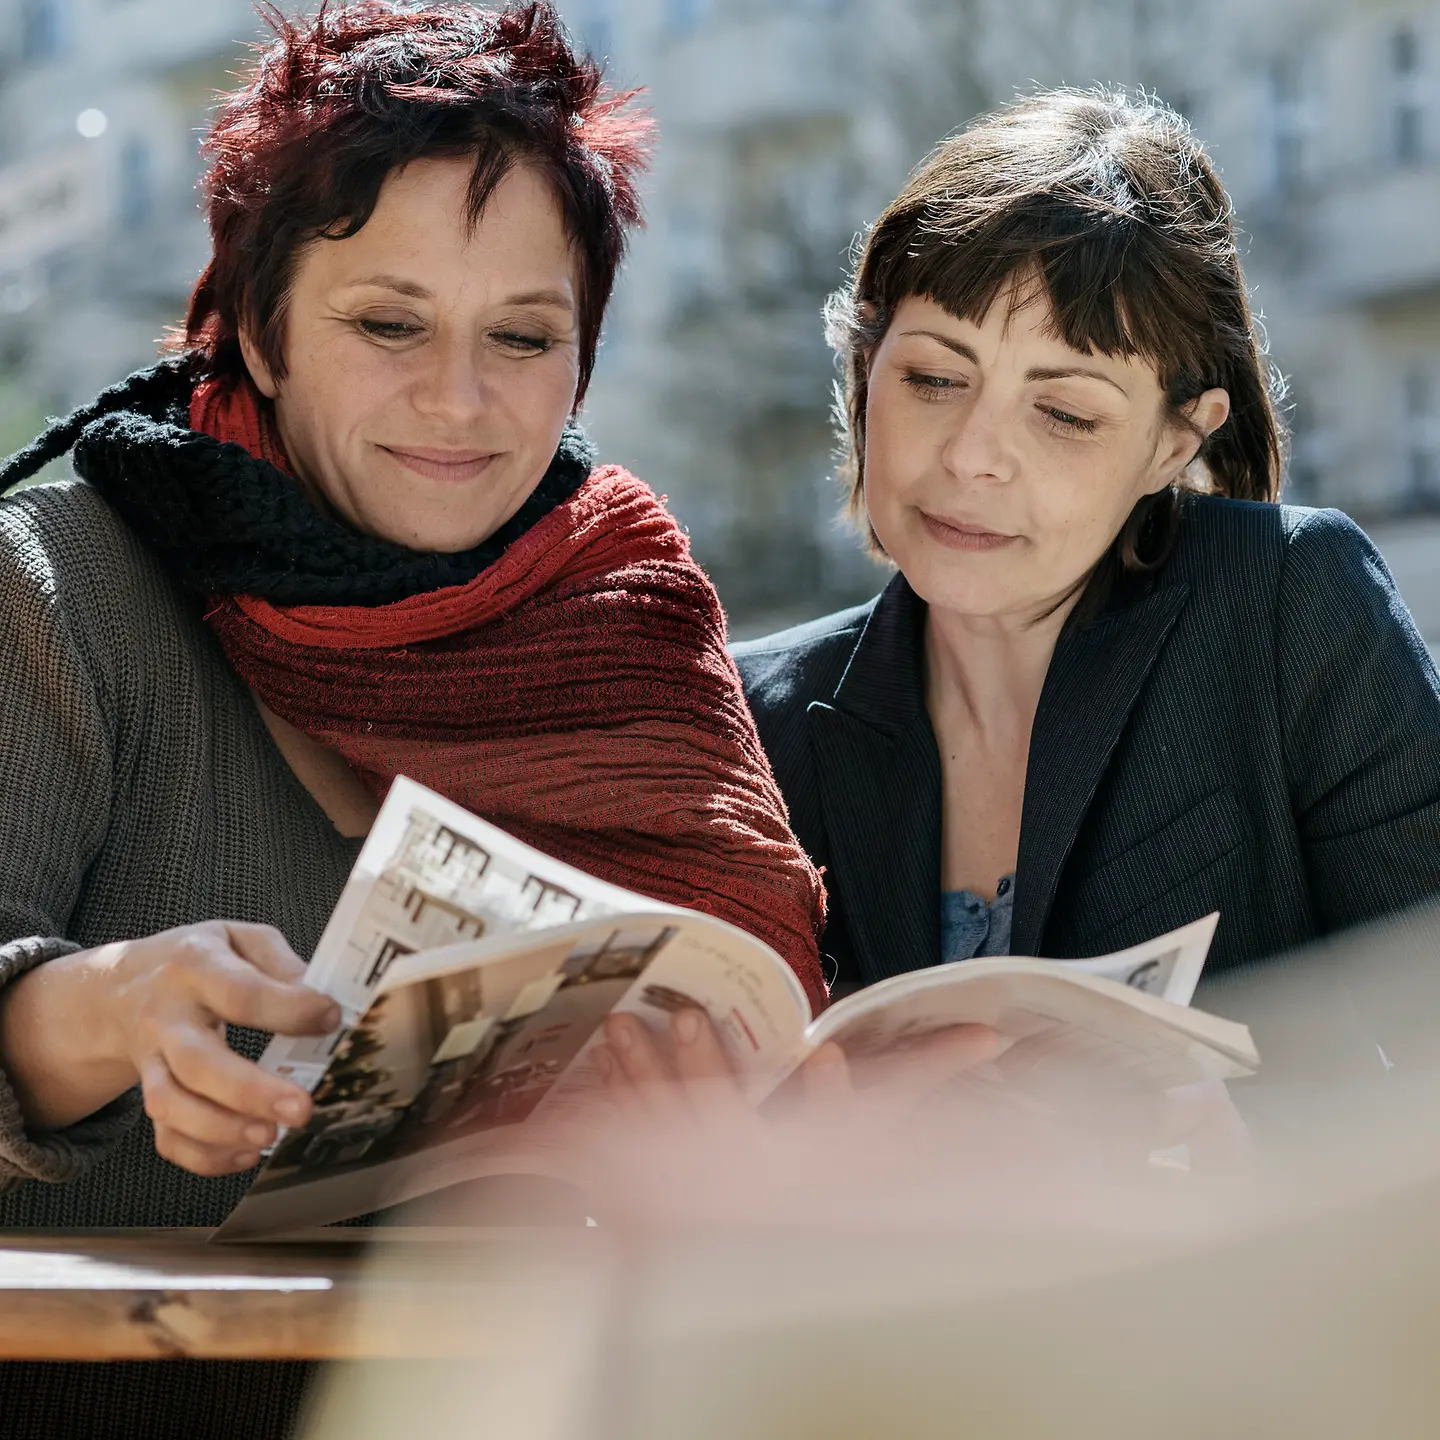 Zwei Frauen schauen gemeinsam in eine Zeitschrift